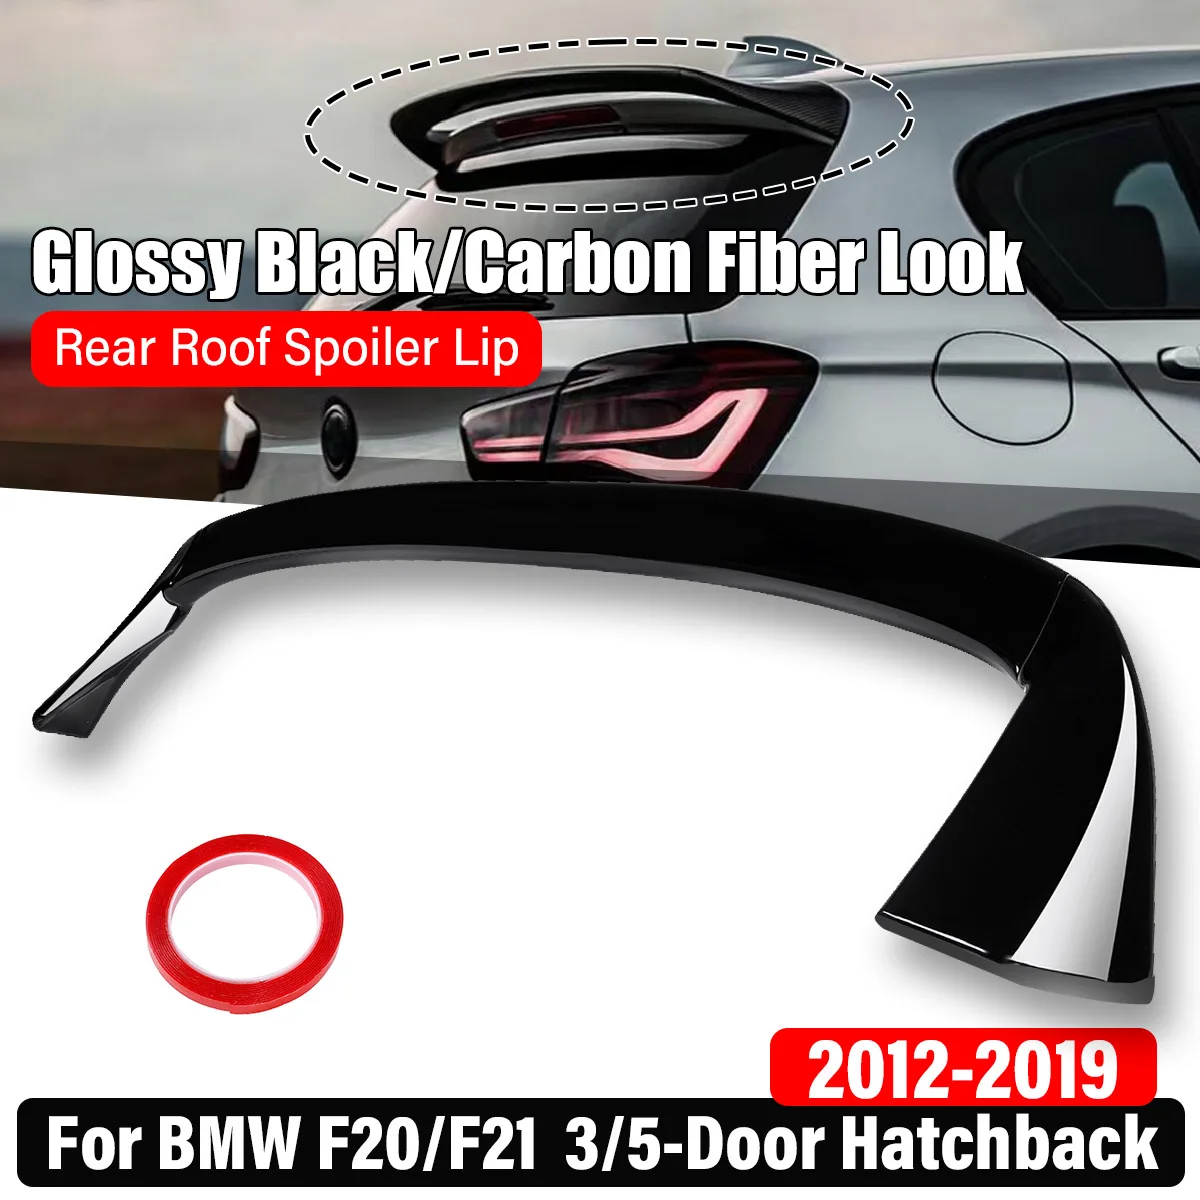 

New Rear Roof Spoiler Lip Trunk Wing Lip Spoiler For BMW F20 F21 116i 118i 120i 125i M135i M140i 3Door 5Door Hatchback 2012-2019